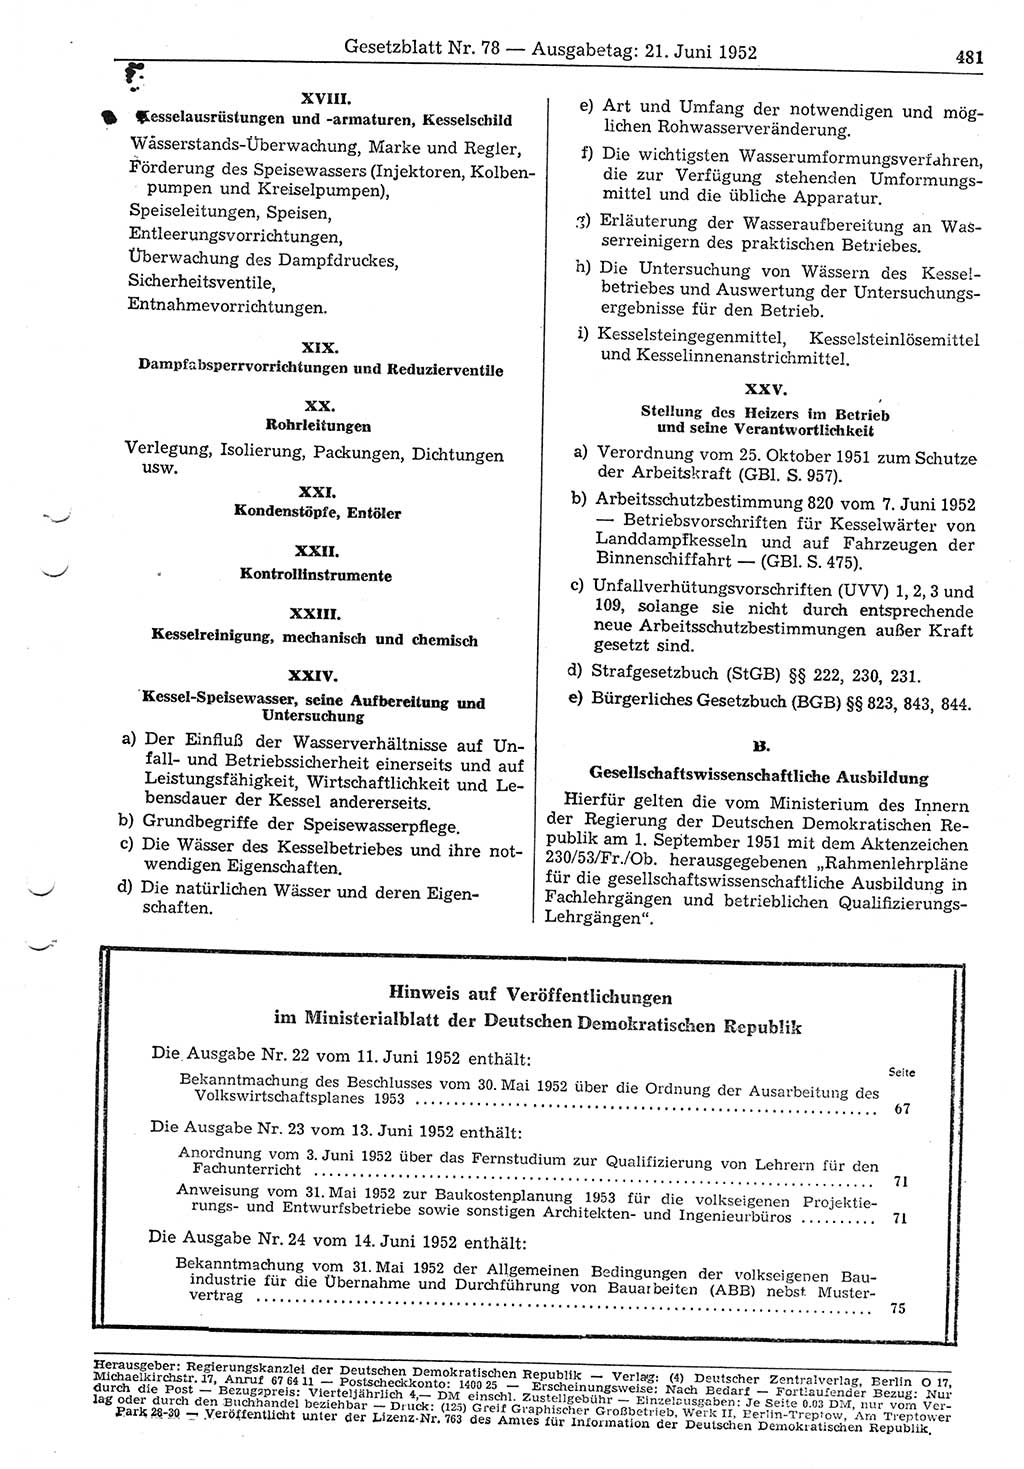 Gesetzblatt (GBl.) der Deutschen Demokratischen Republik (DDR) 1952, Seite 481 (GBl. DDR 1952, S. 481)